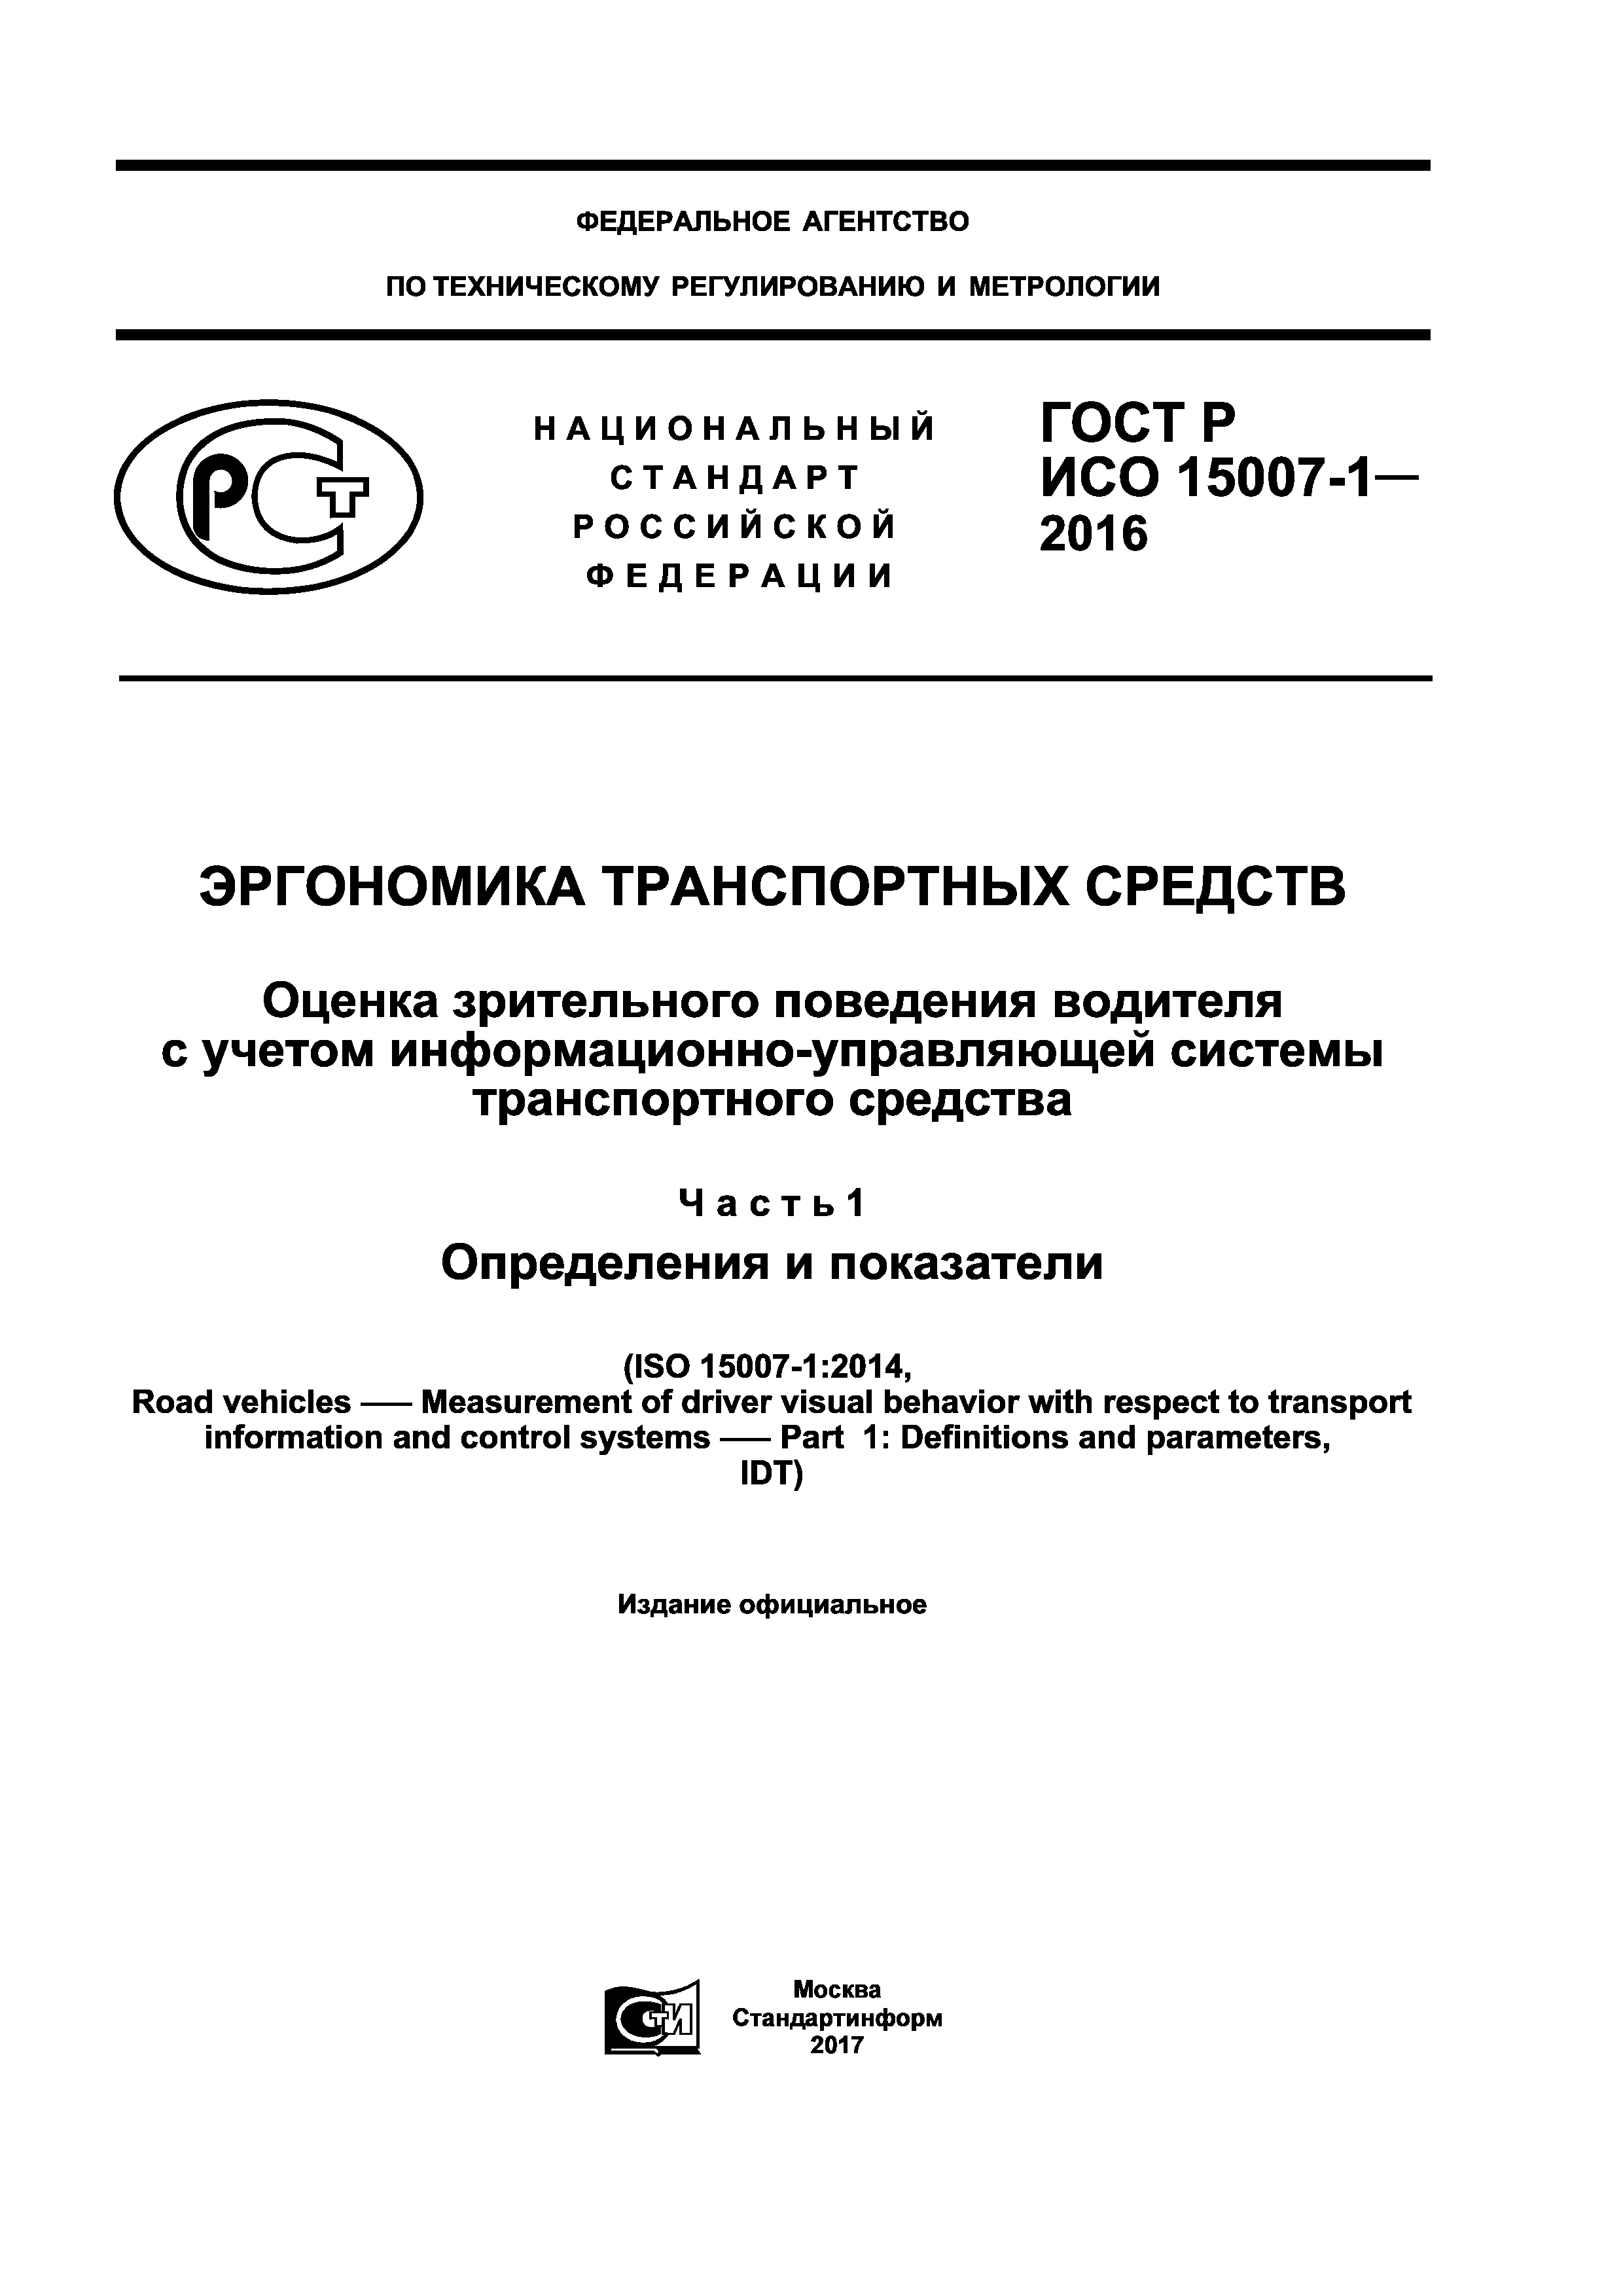 ГОСТ Р ИСО 15007-1-2016